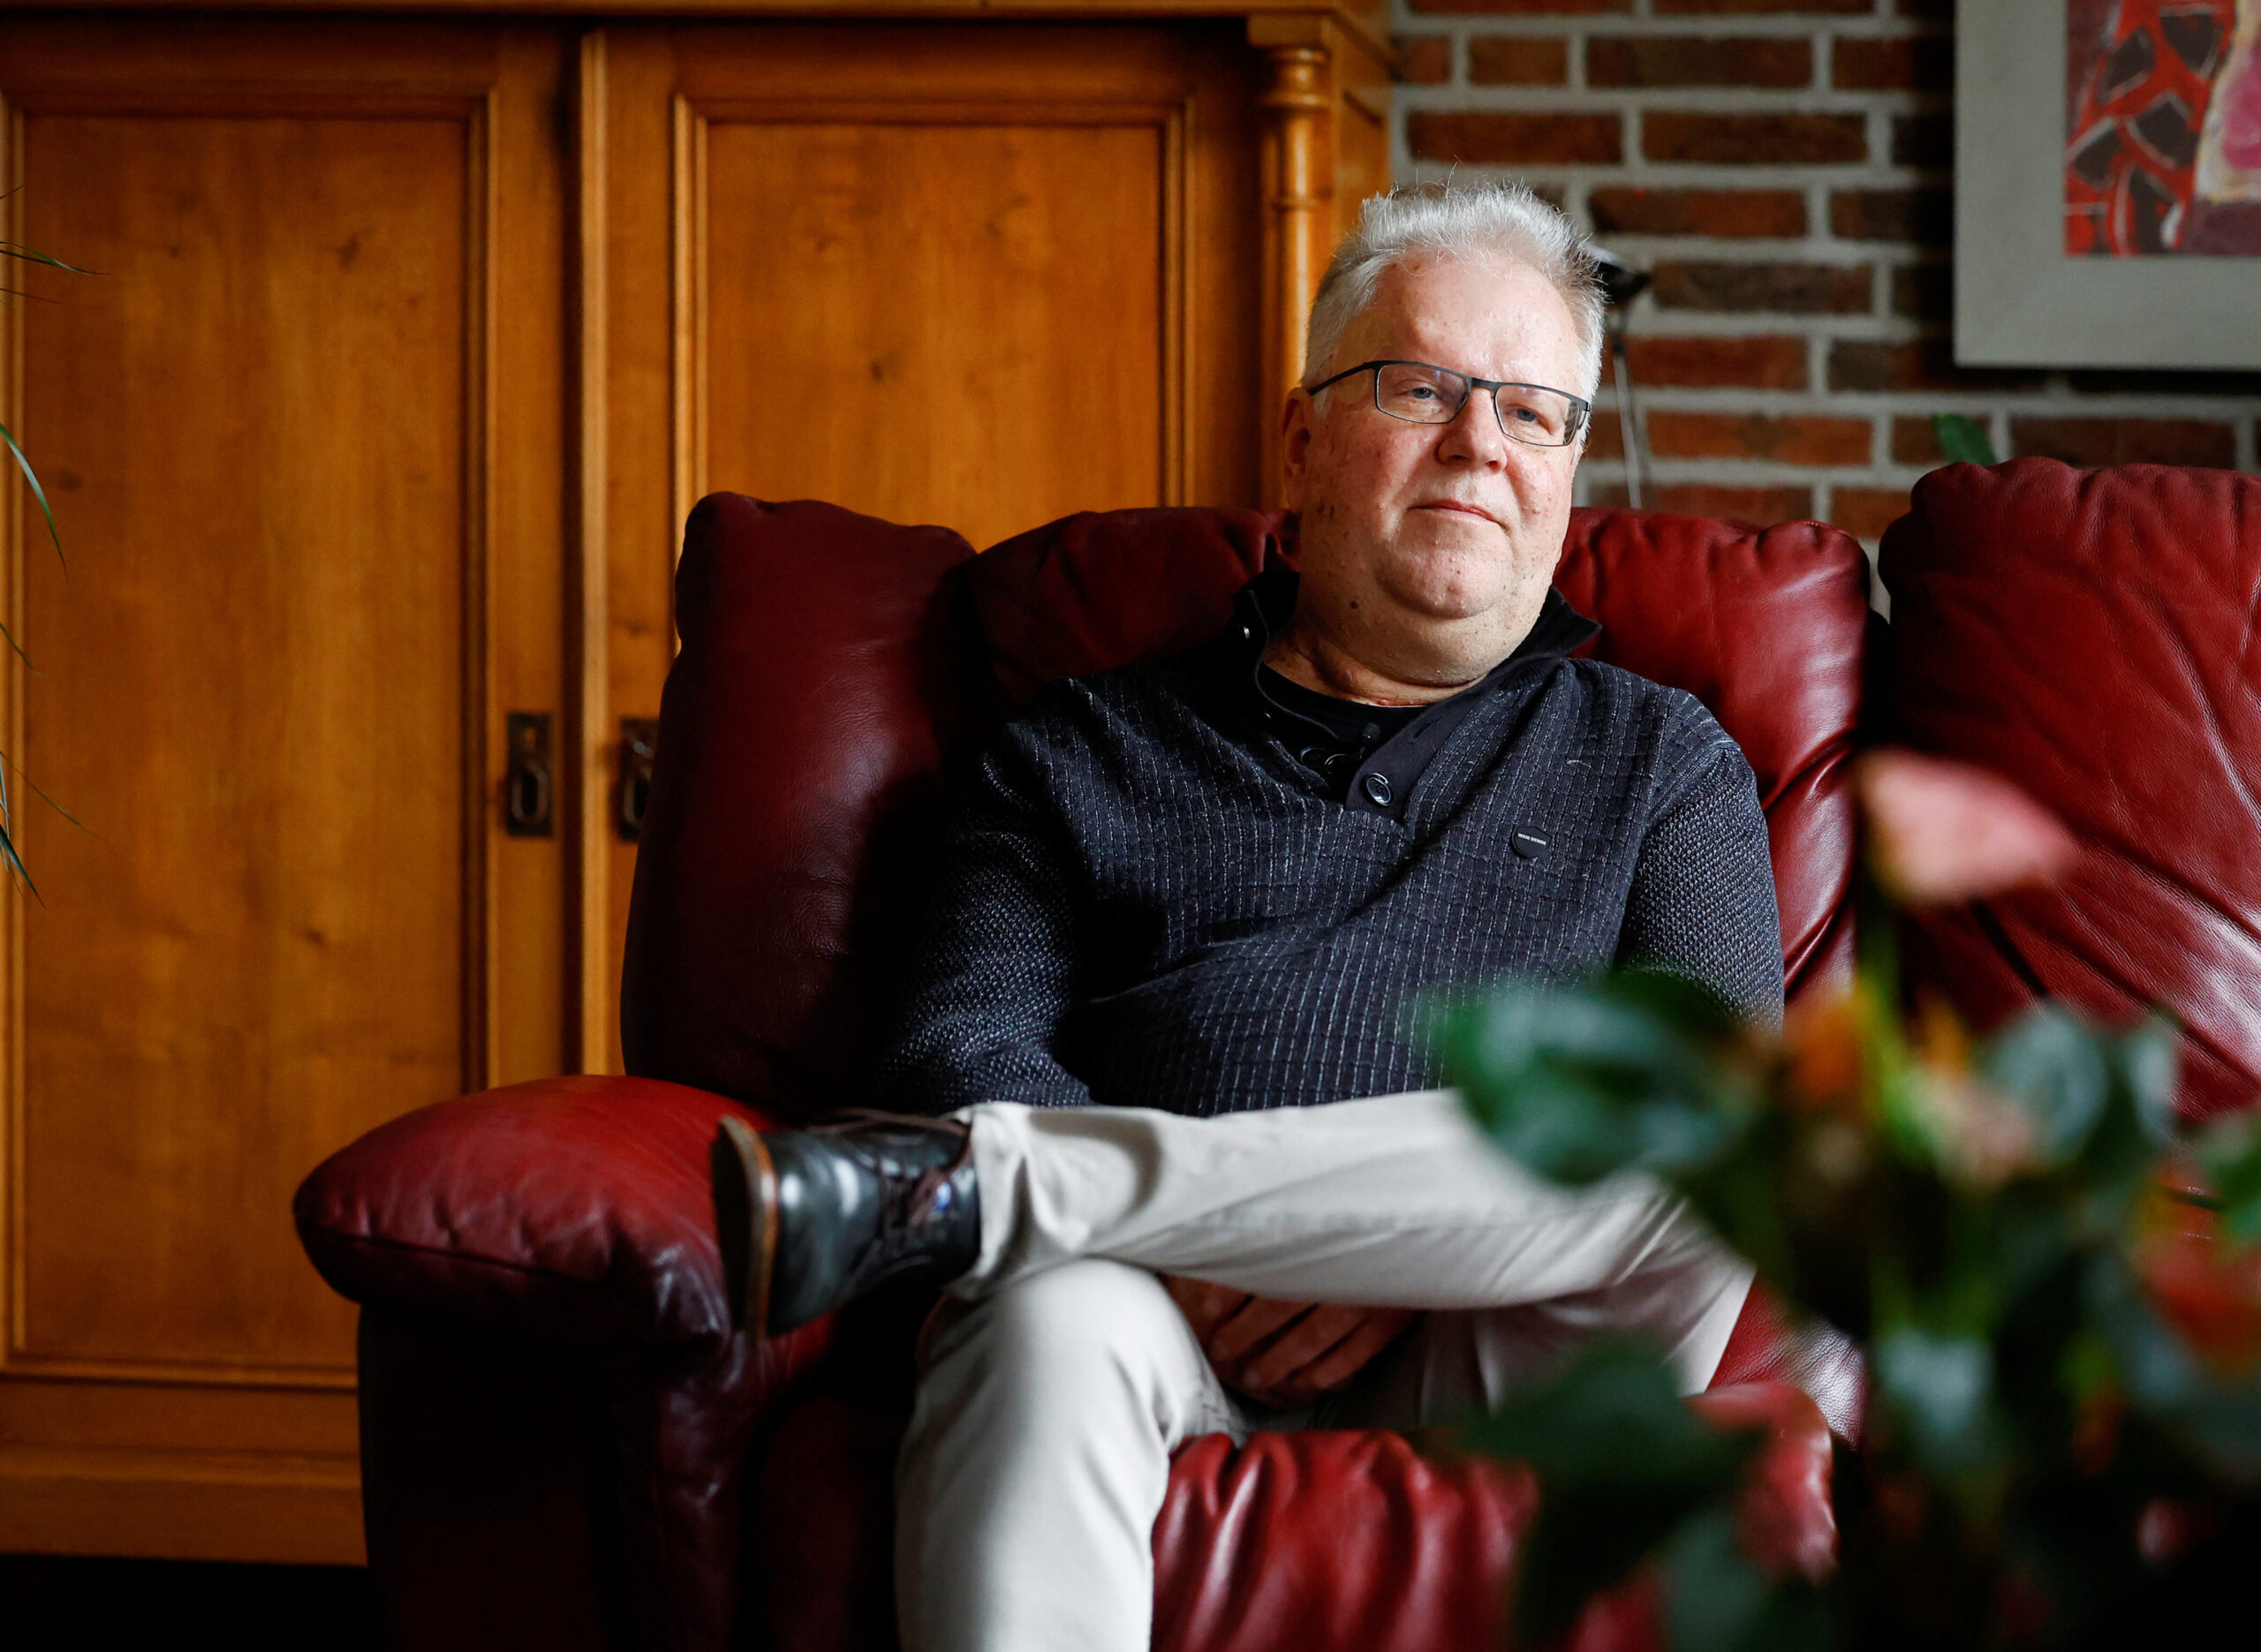 Flying Dutchman recognized as longest-surviving heart transplant patient